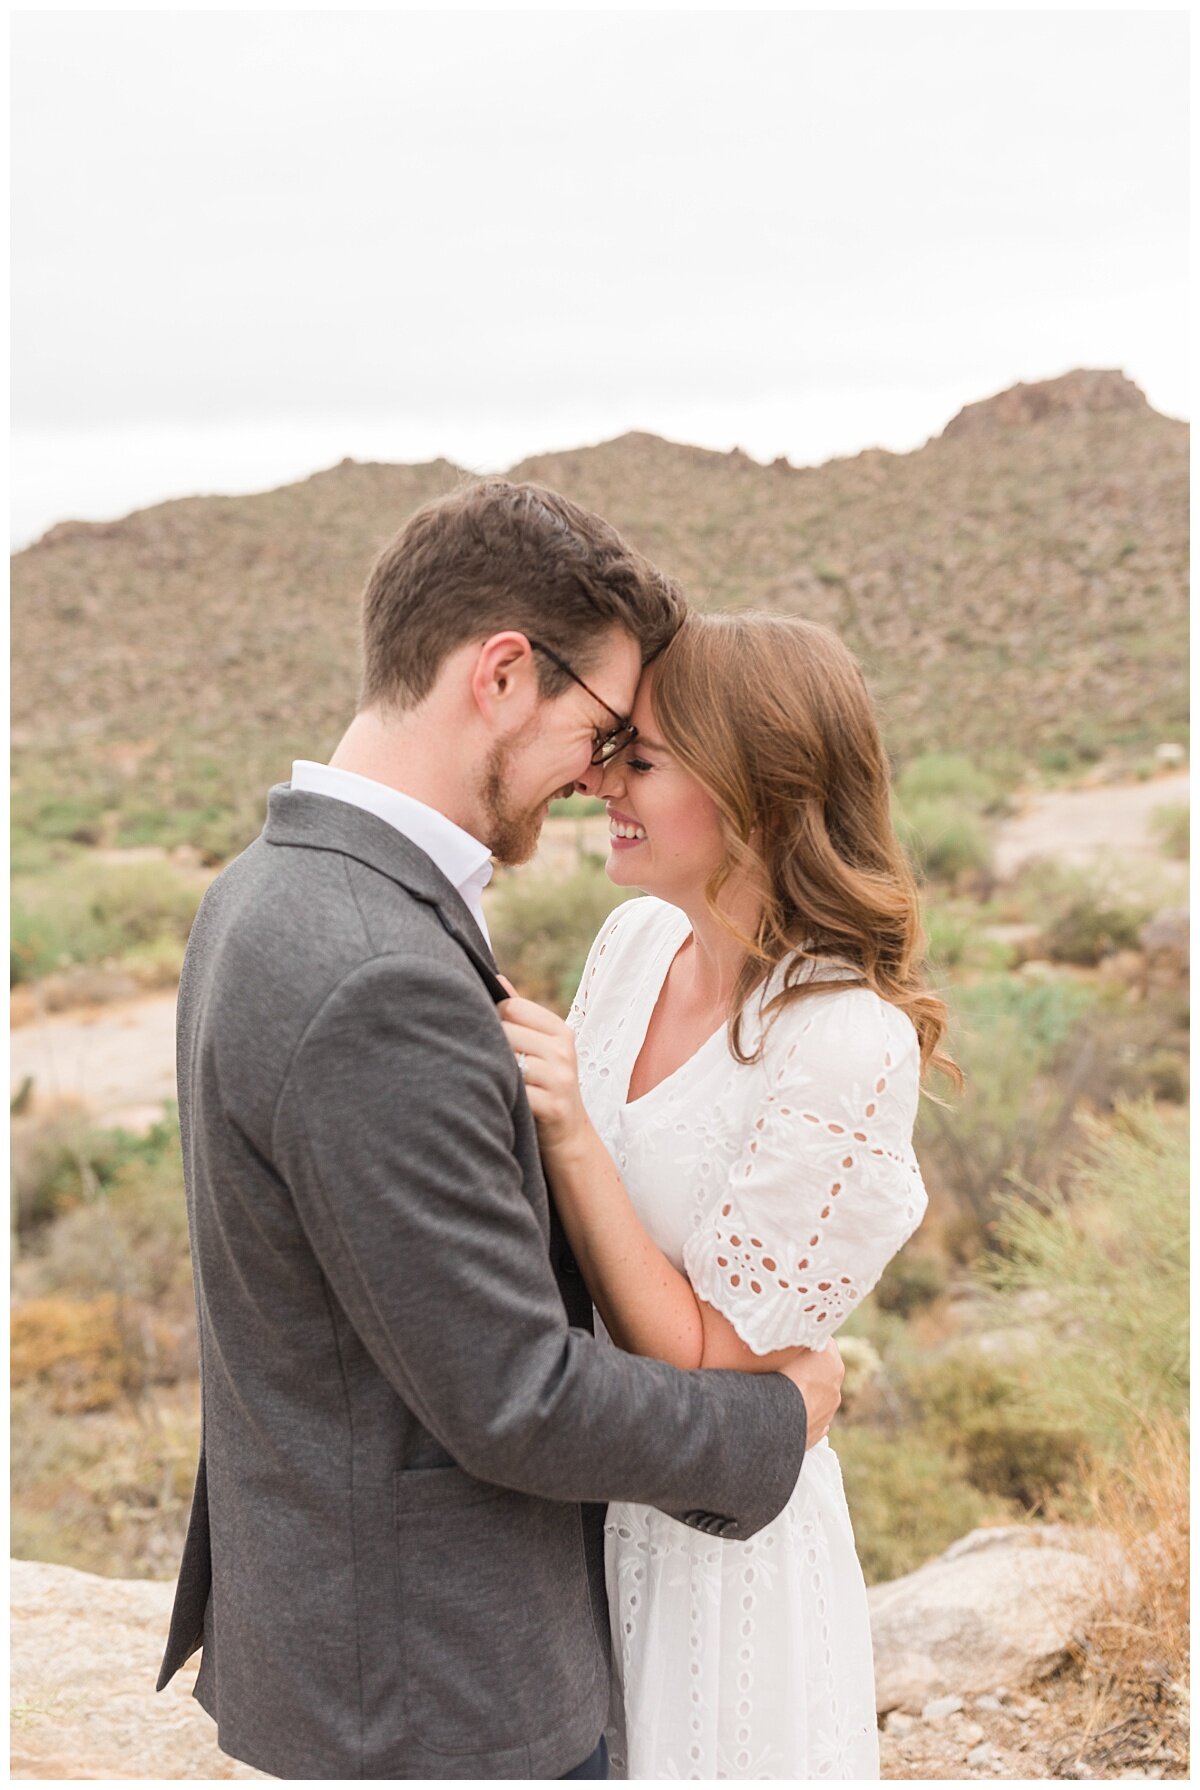 Engagement Pictures in Tucson, Arizona